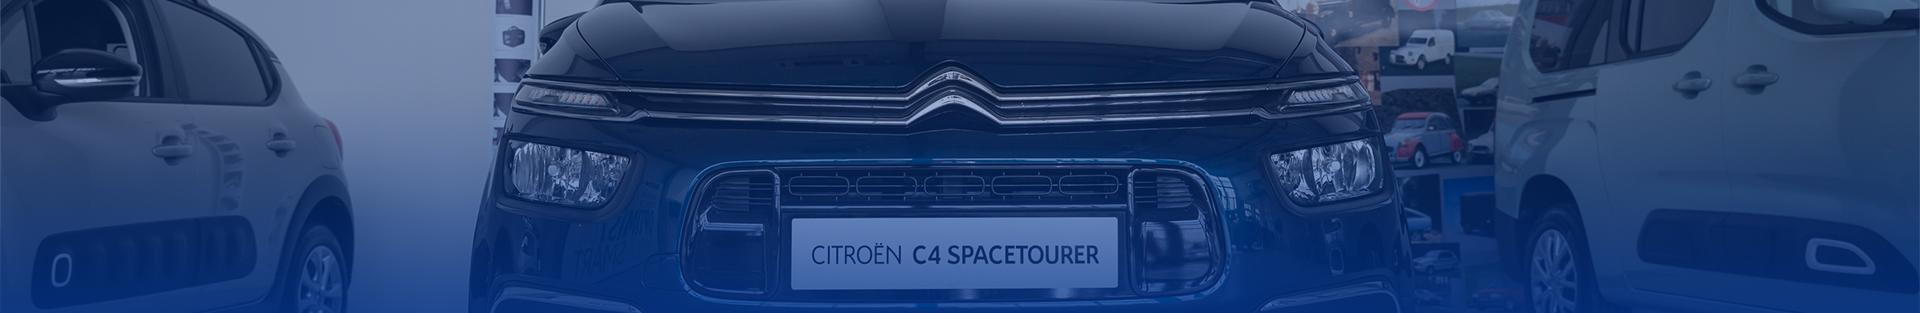 Citroën Spacetourervelkorysý a praktický vůz